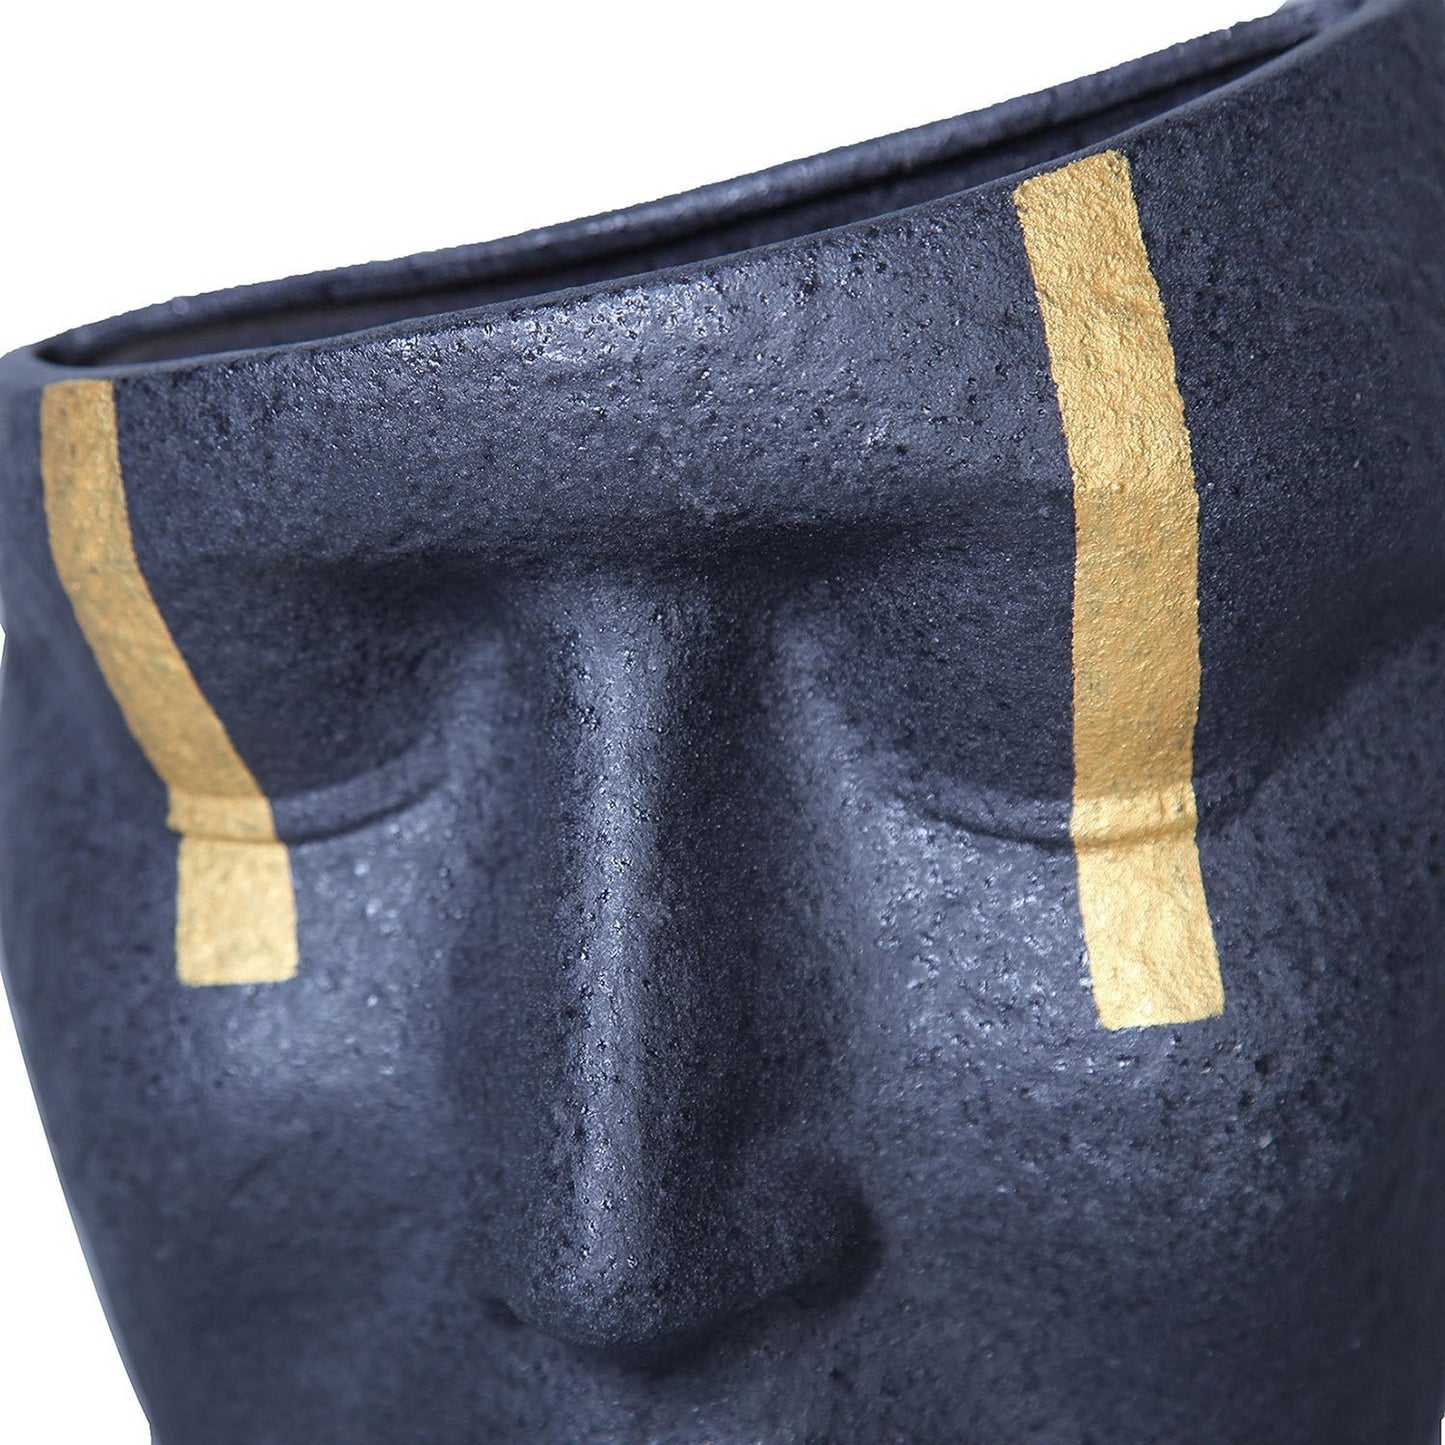 Gesichtsskulptur-Vase aus Keramik mit schwarzem und goldenem Akzent